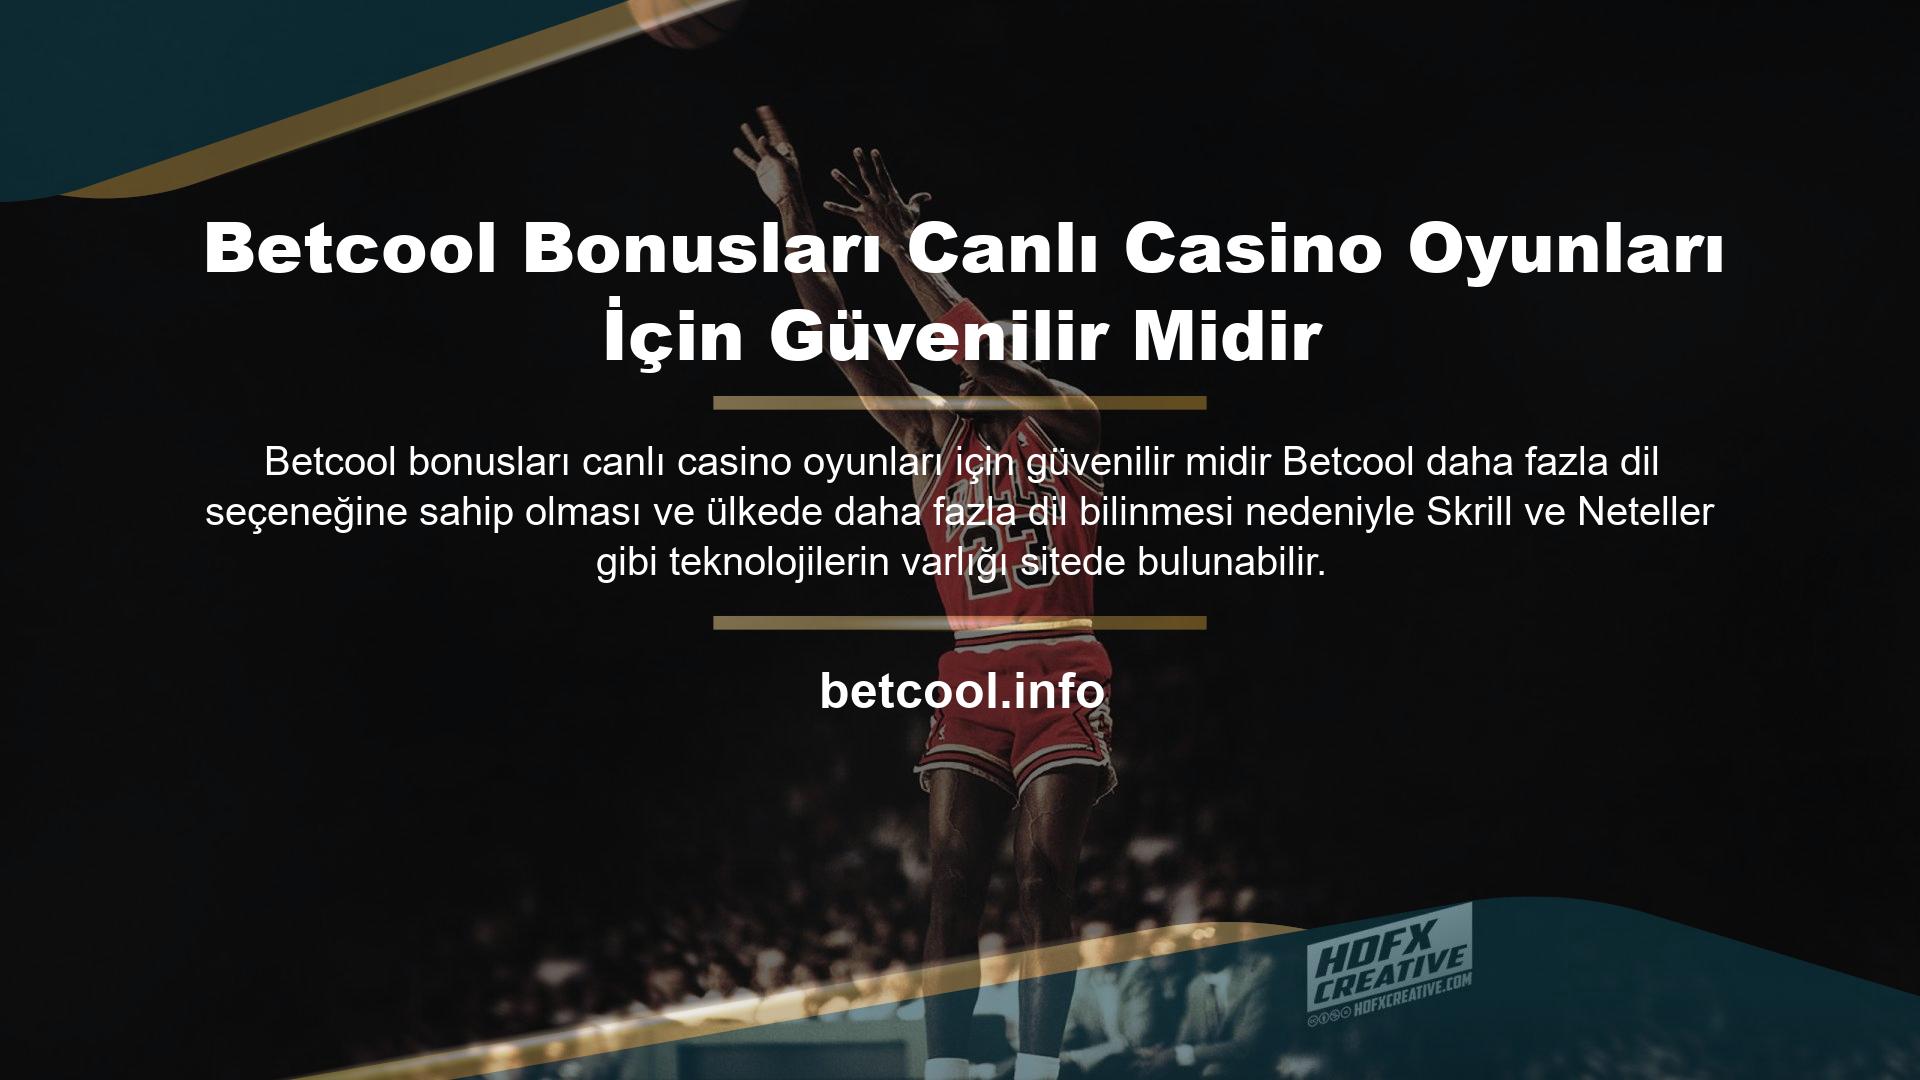 Betcool Bonusları Canlı Casino Oyunları İçin Güvenilir Midir